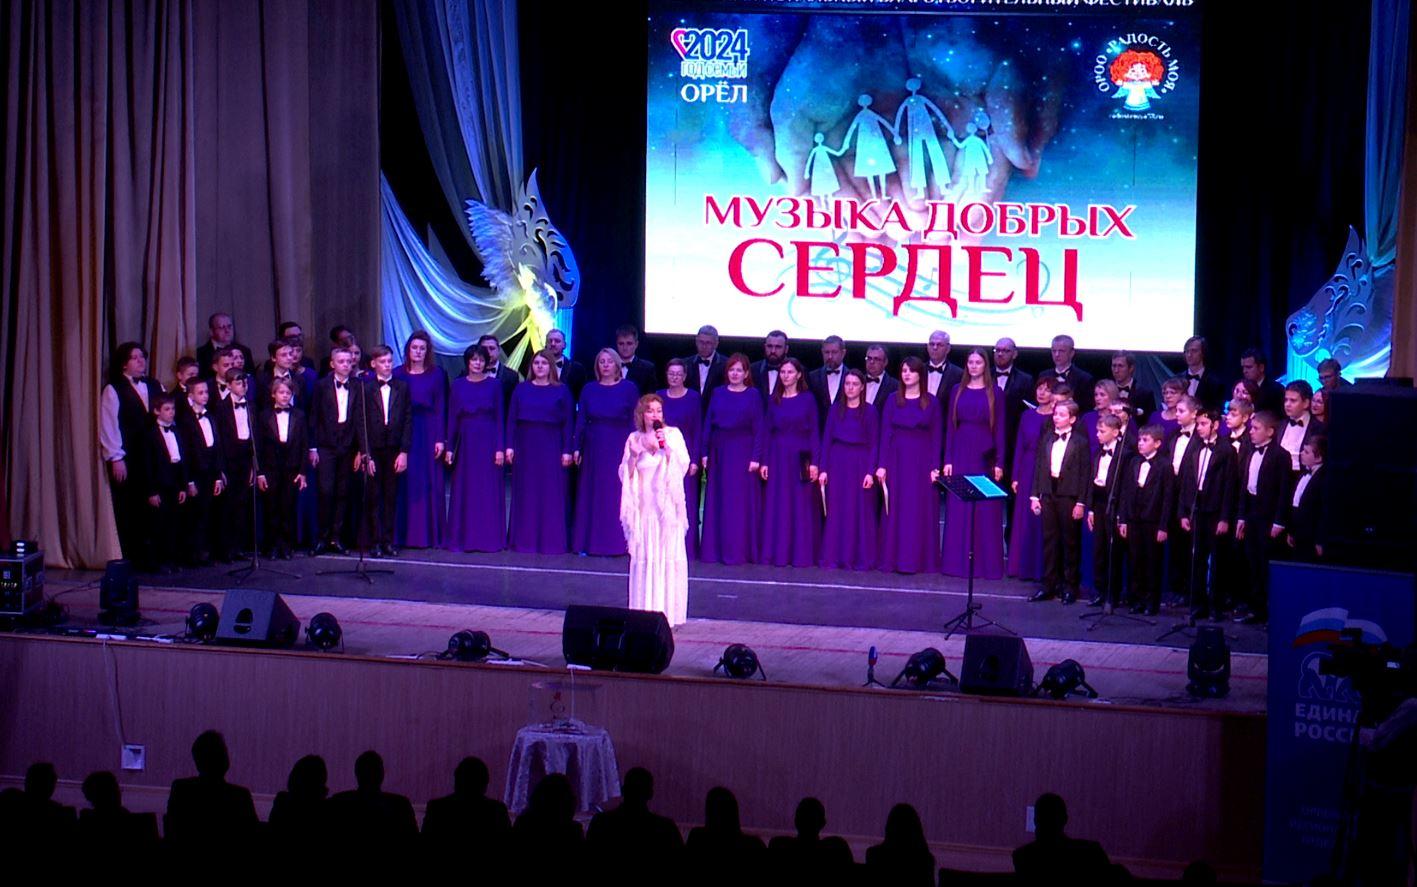 457 тыс. рублей собрали в Орле на благотворительном фестивале «Музыка добрых сердец»